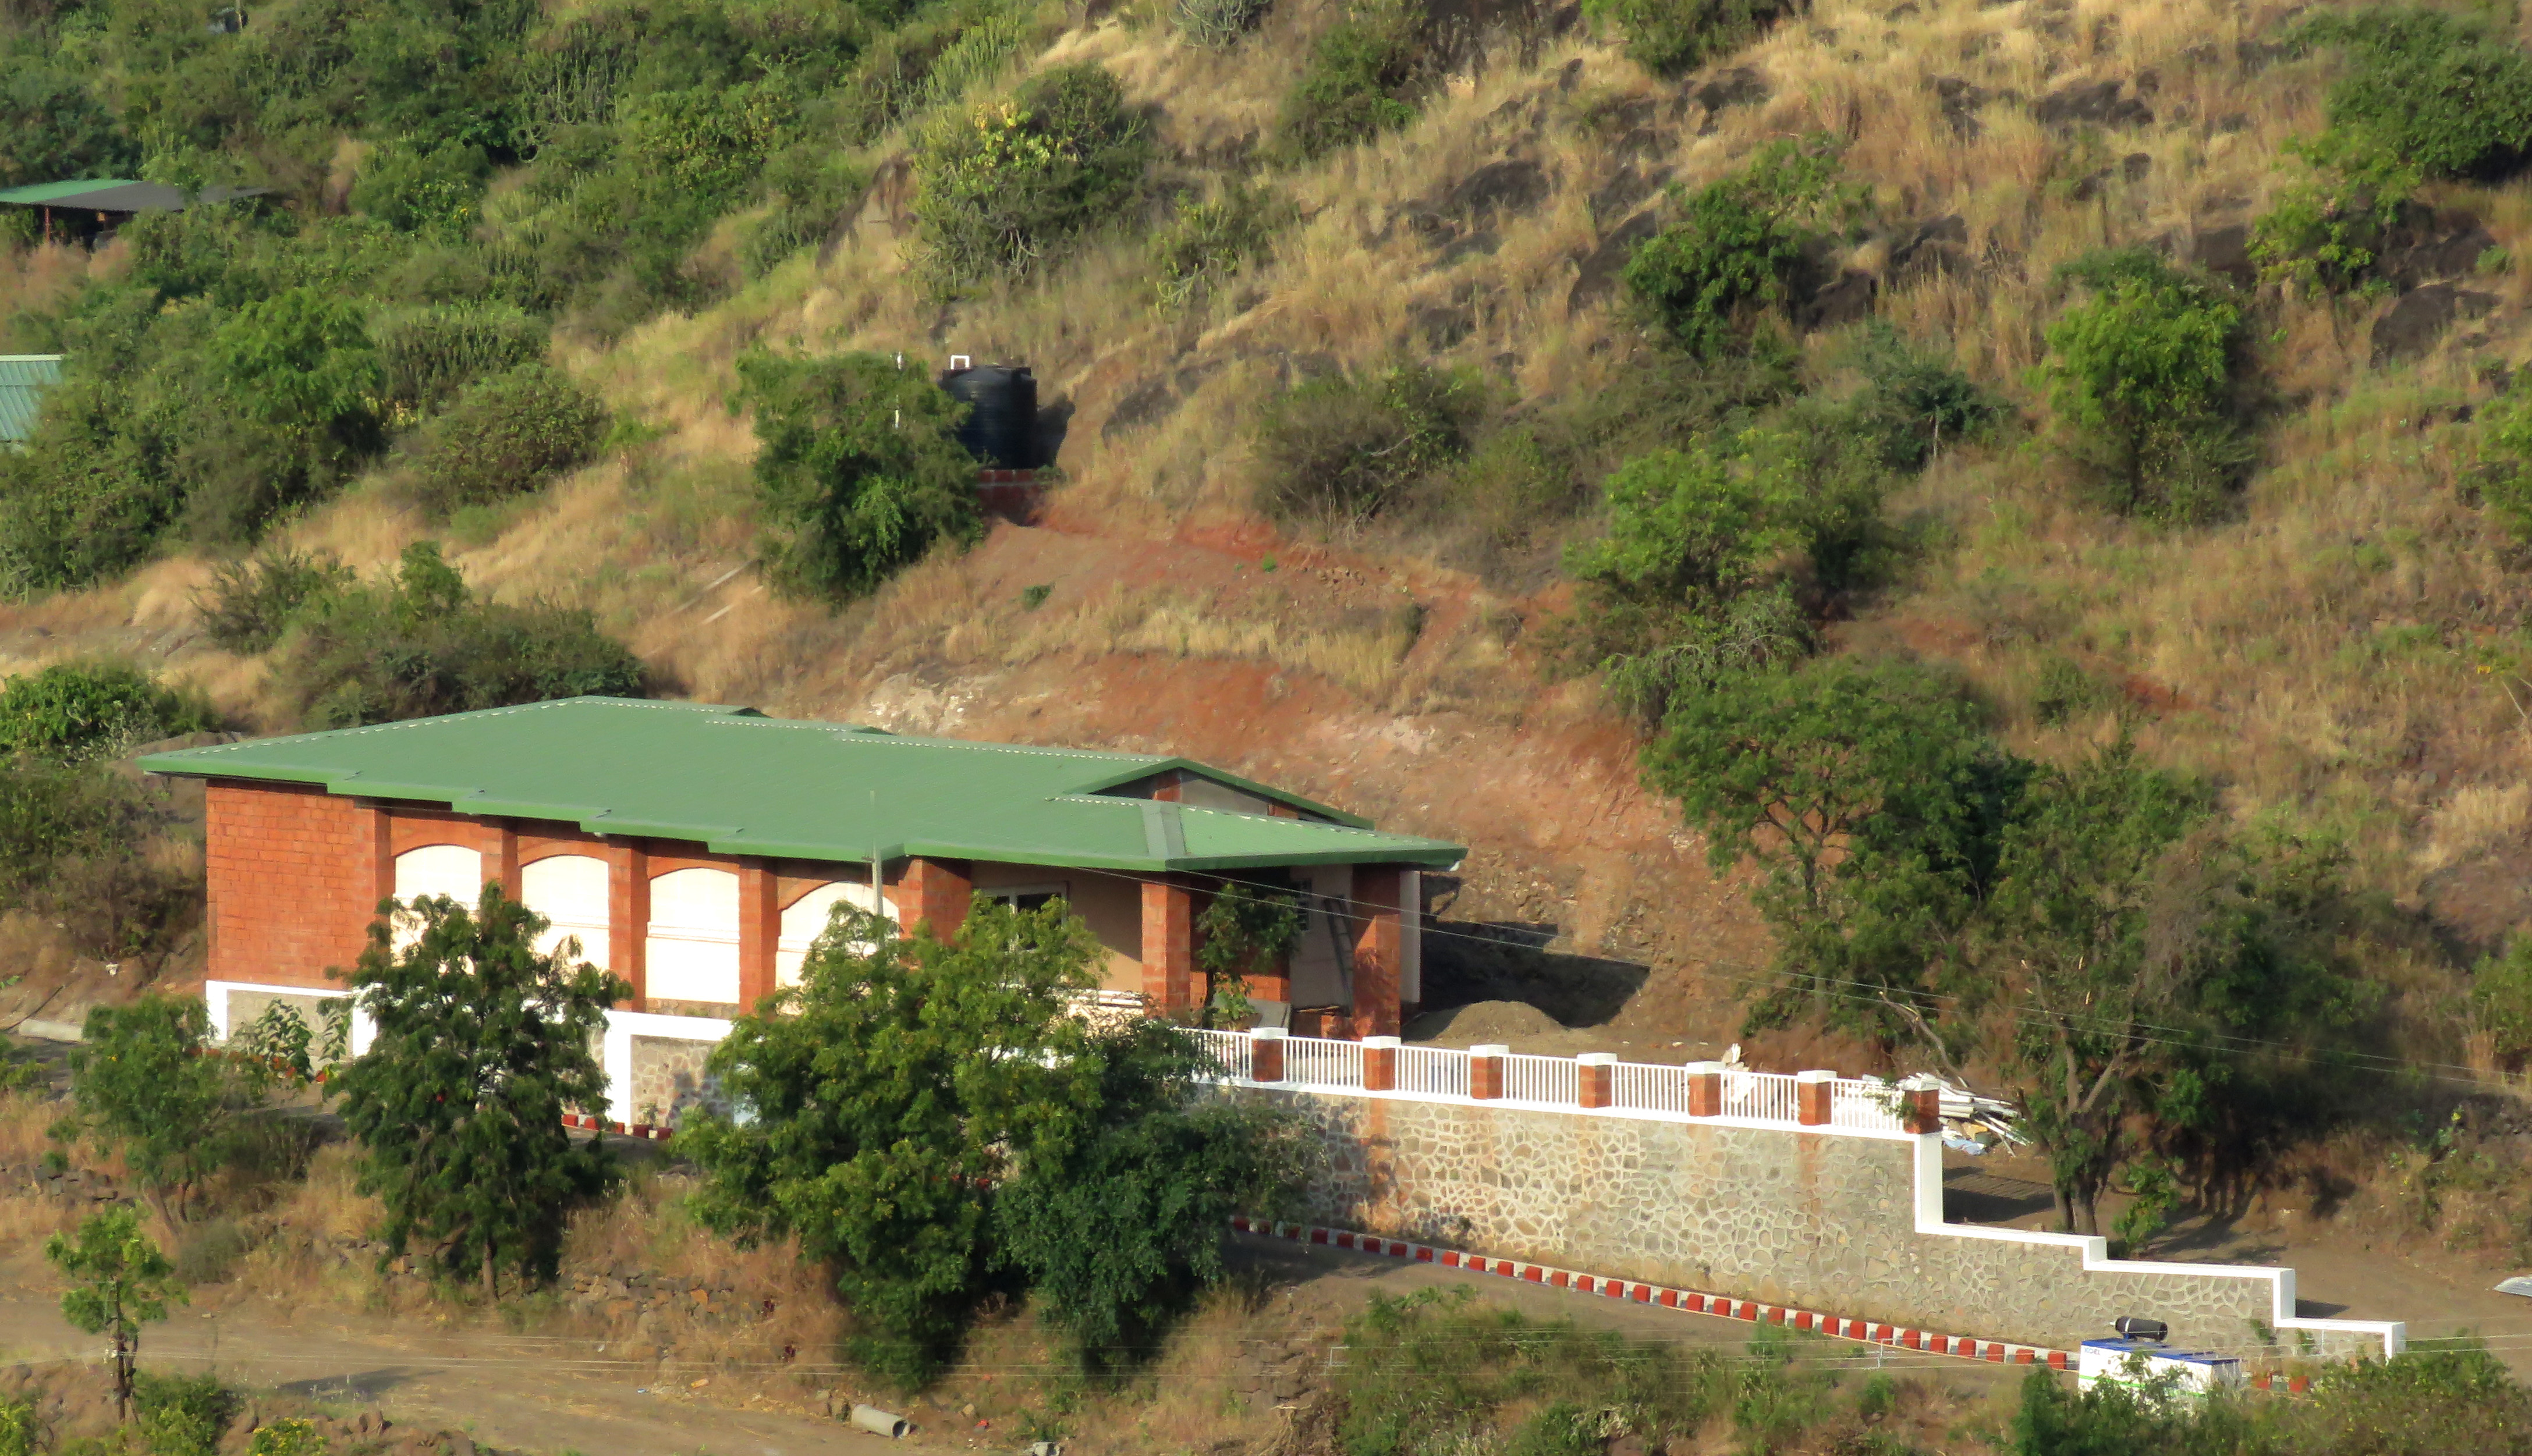 Prakruti - Rural Community Health Center